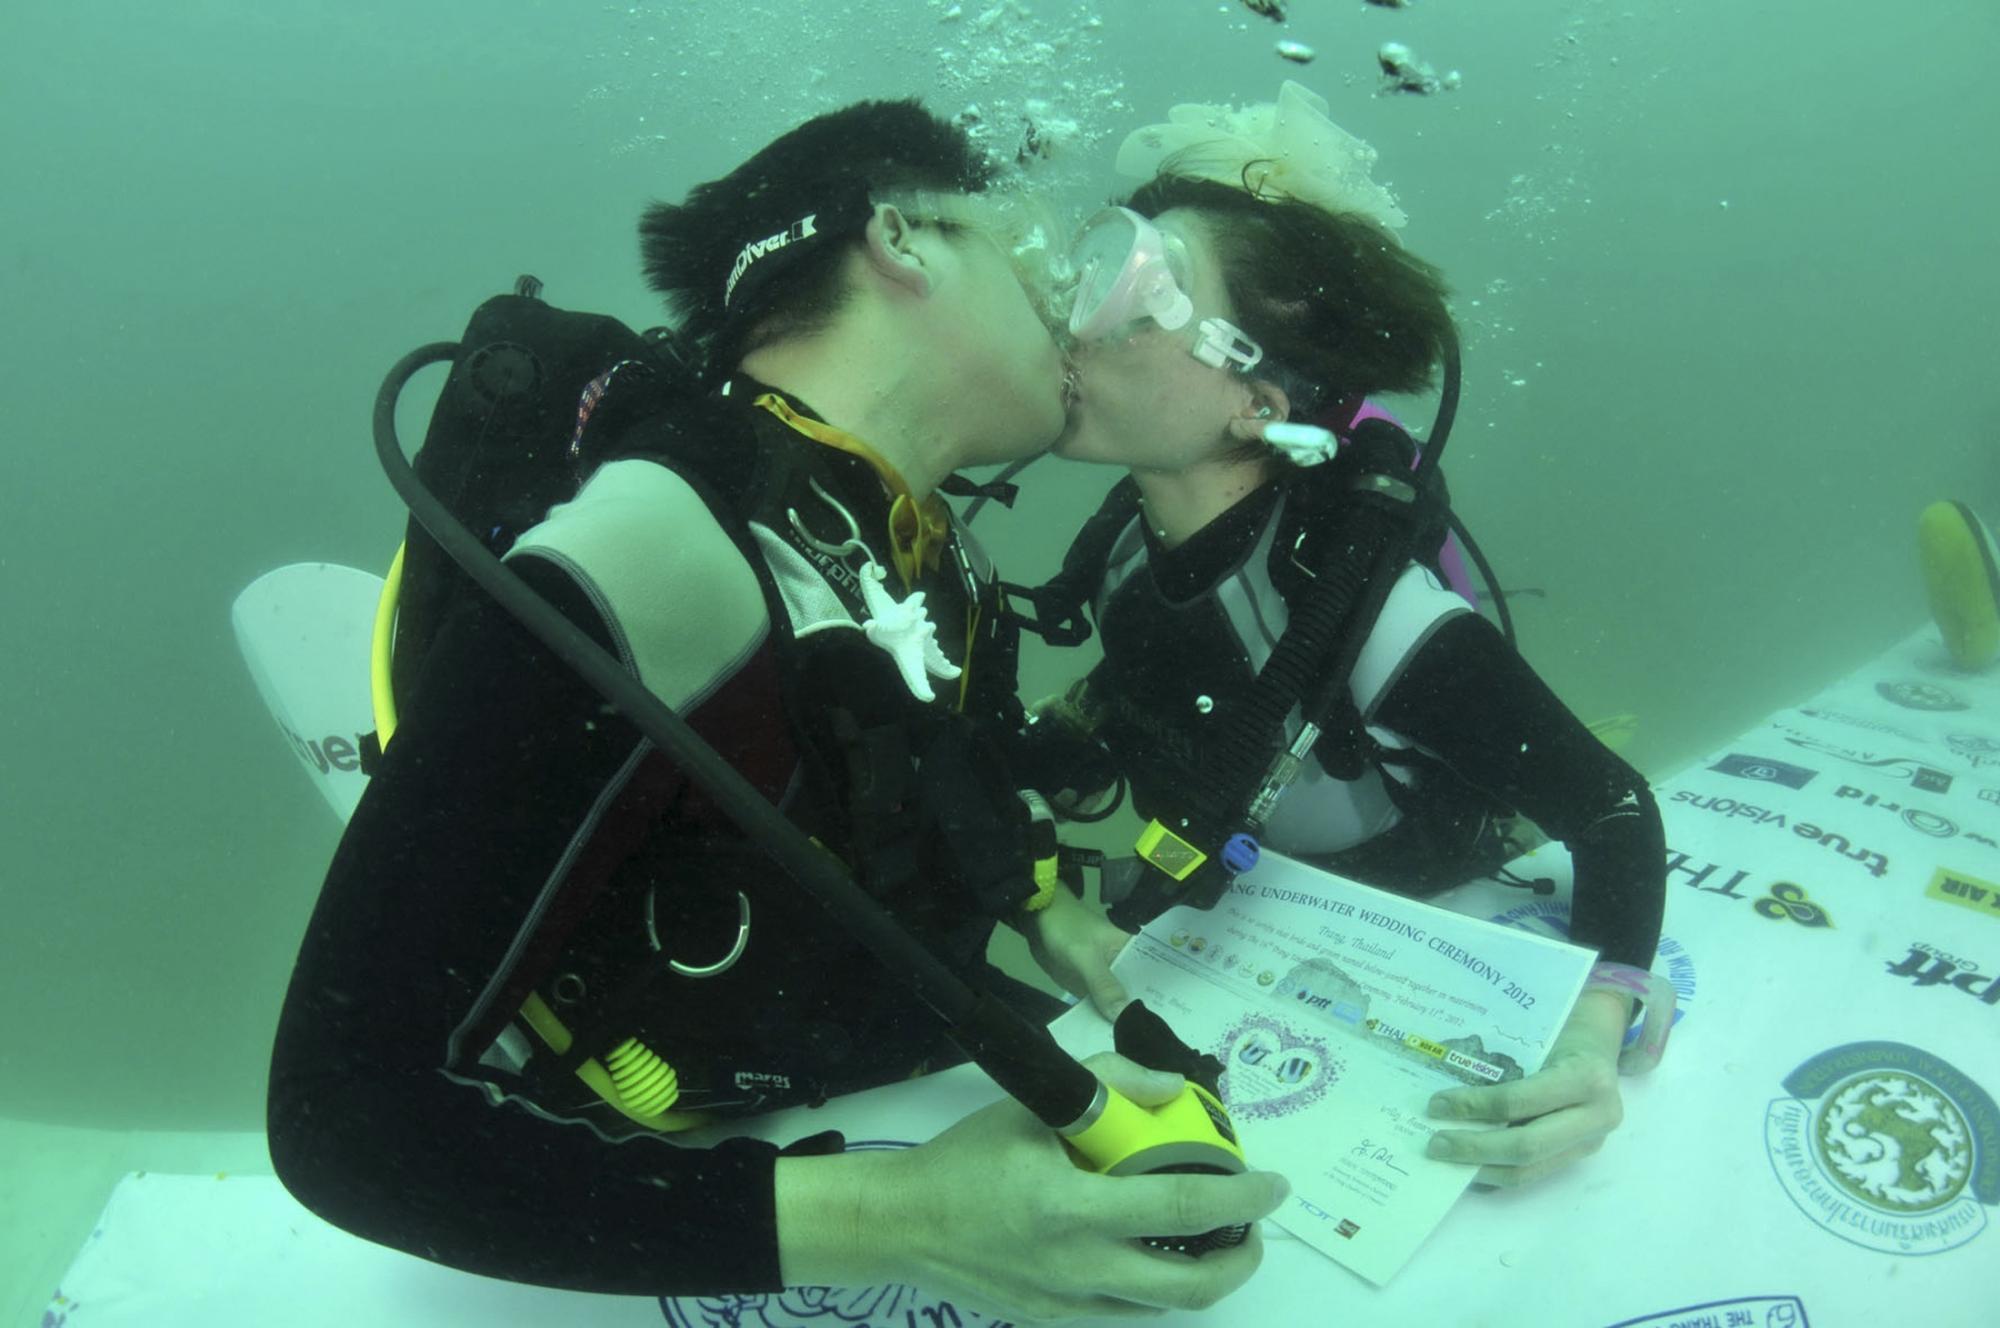 泰国举行水下婚礼 6对新人喜结连理